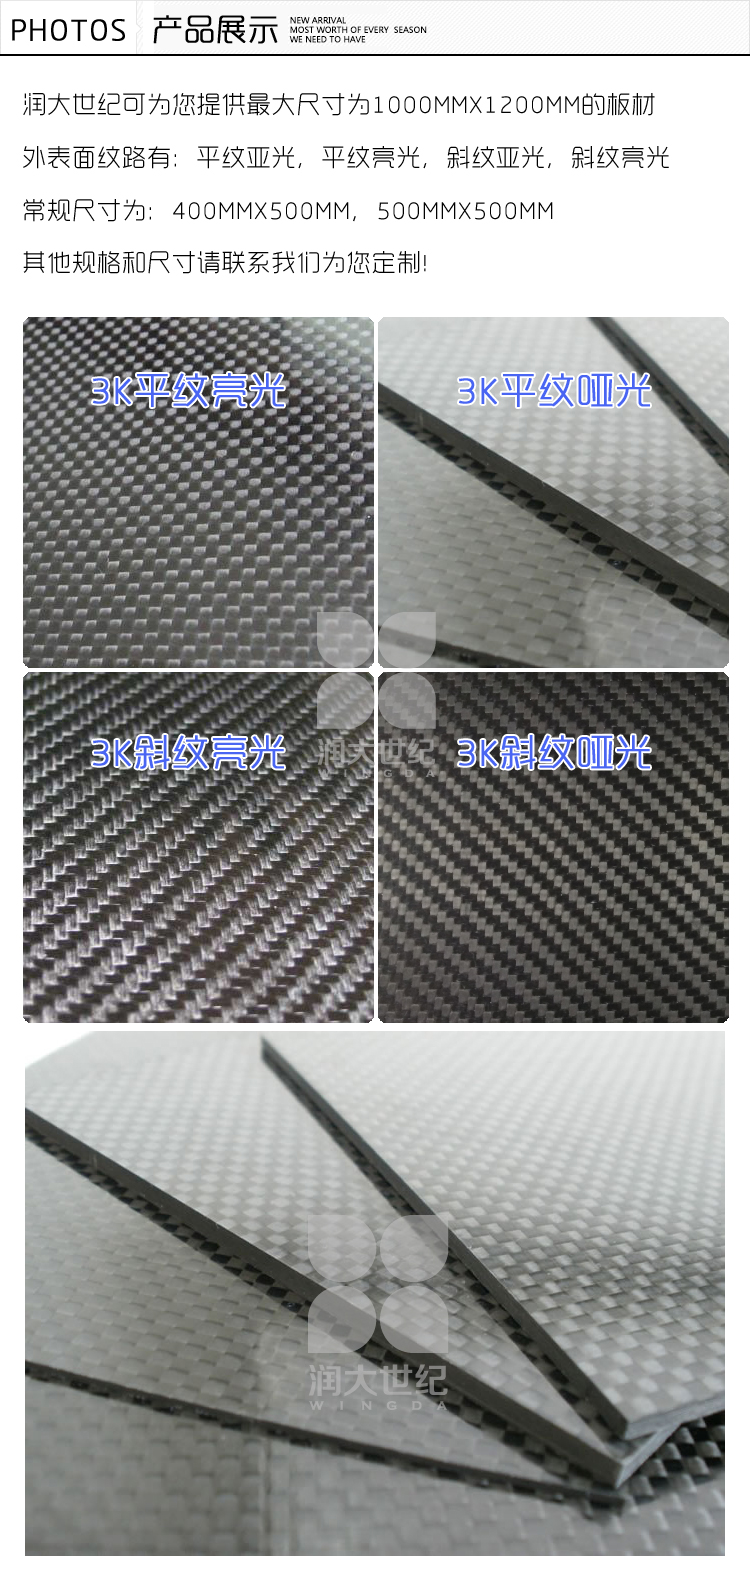 3.5mm斜纹亮光碳纤维板，碳素纤维板材，碳纤维片产品展示,碳纤维板,碳素纤维板,碳纤维板材